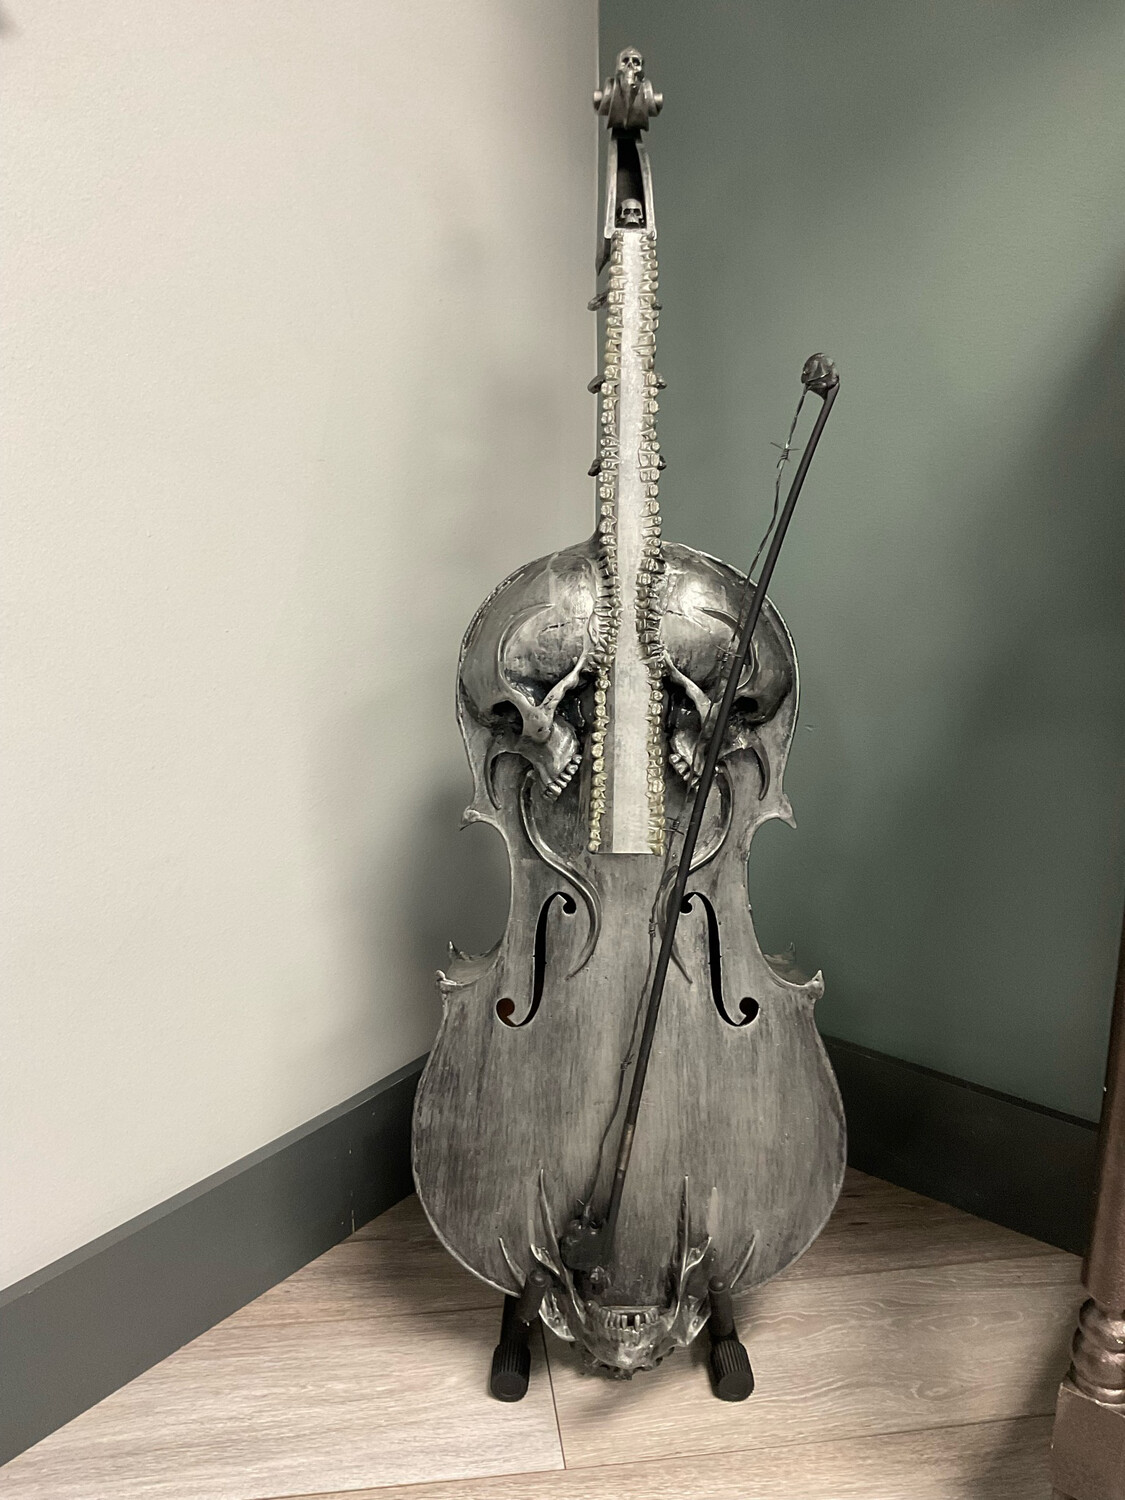 Deil's Cello